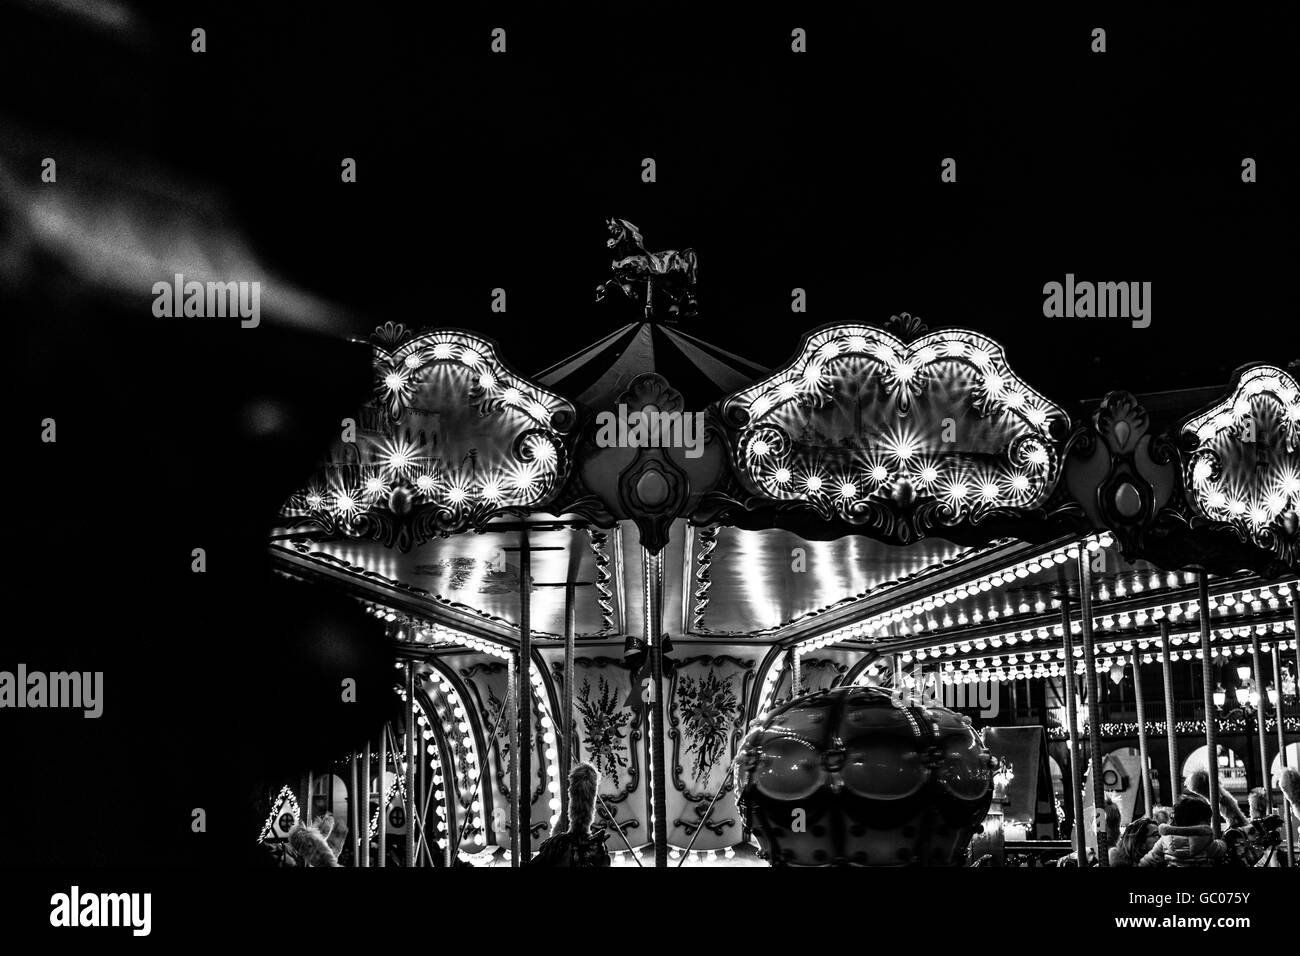 Vue de nuit de la rue carrousel traditionnel illuminé par nuit Banque D'Images